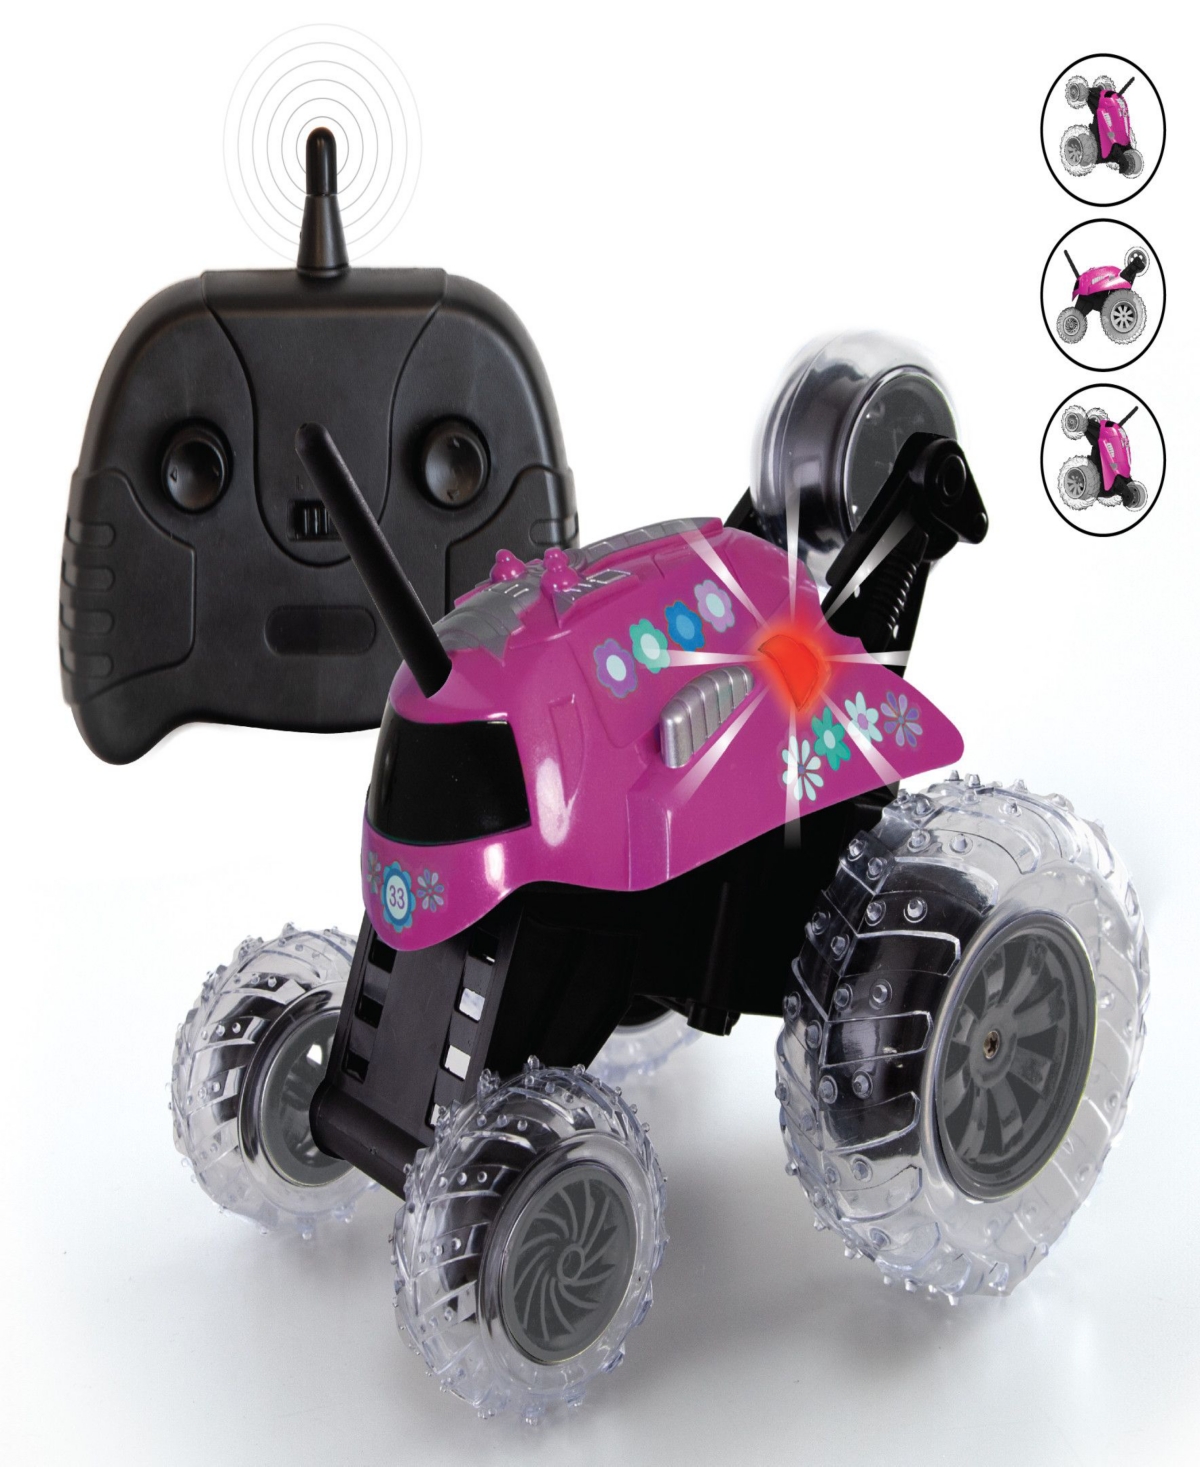 Sharper Image Kids' Thunder Tumbler Toy Radio Controlled Car Set, 2 Piece In Pink